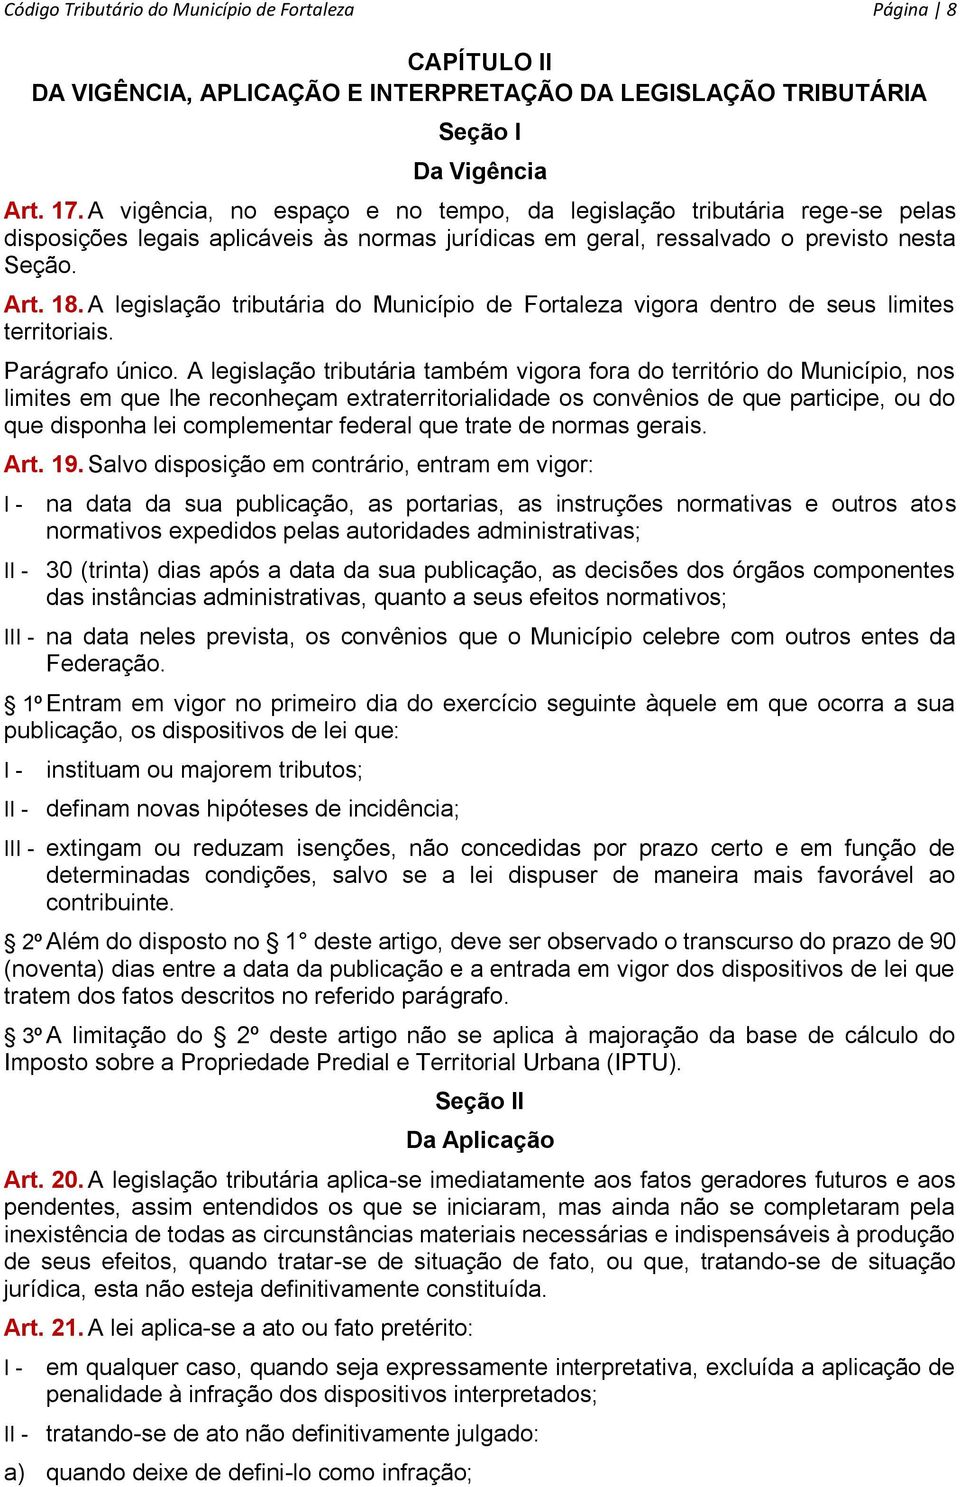 A legislação tributária do Município de Fortaleza vigora dentro de seus limites territoriais. Parágrafo único.